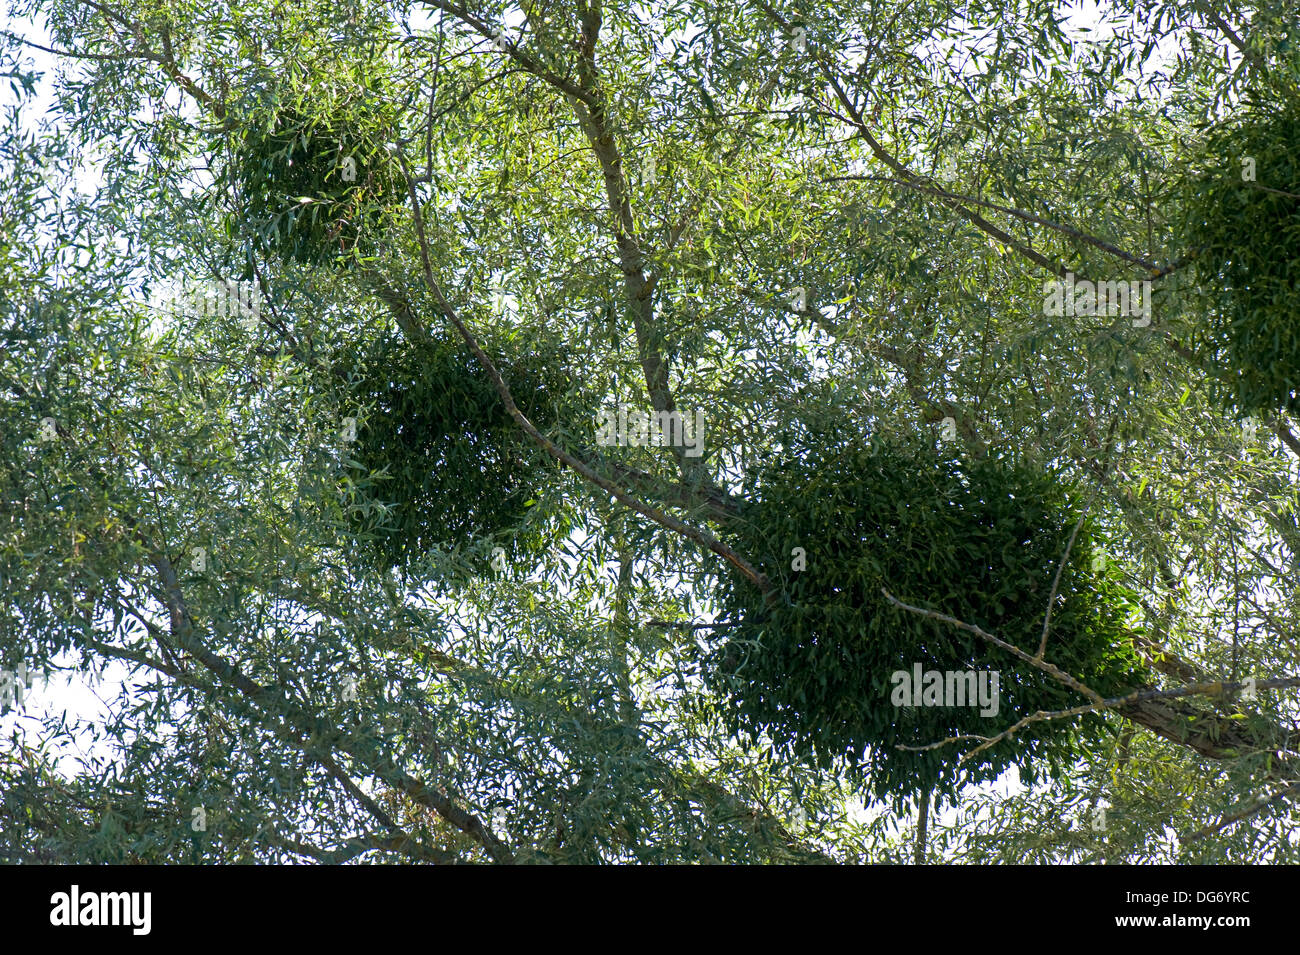 Unión muérdago, Viscum album, un hemi-parásito que crece en un árbol de sauce en las orillas del río Dordoña, Gironda, Francia Foto de stock